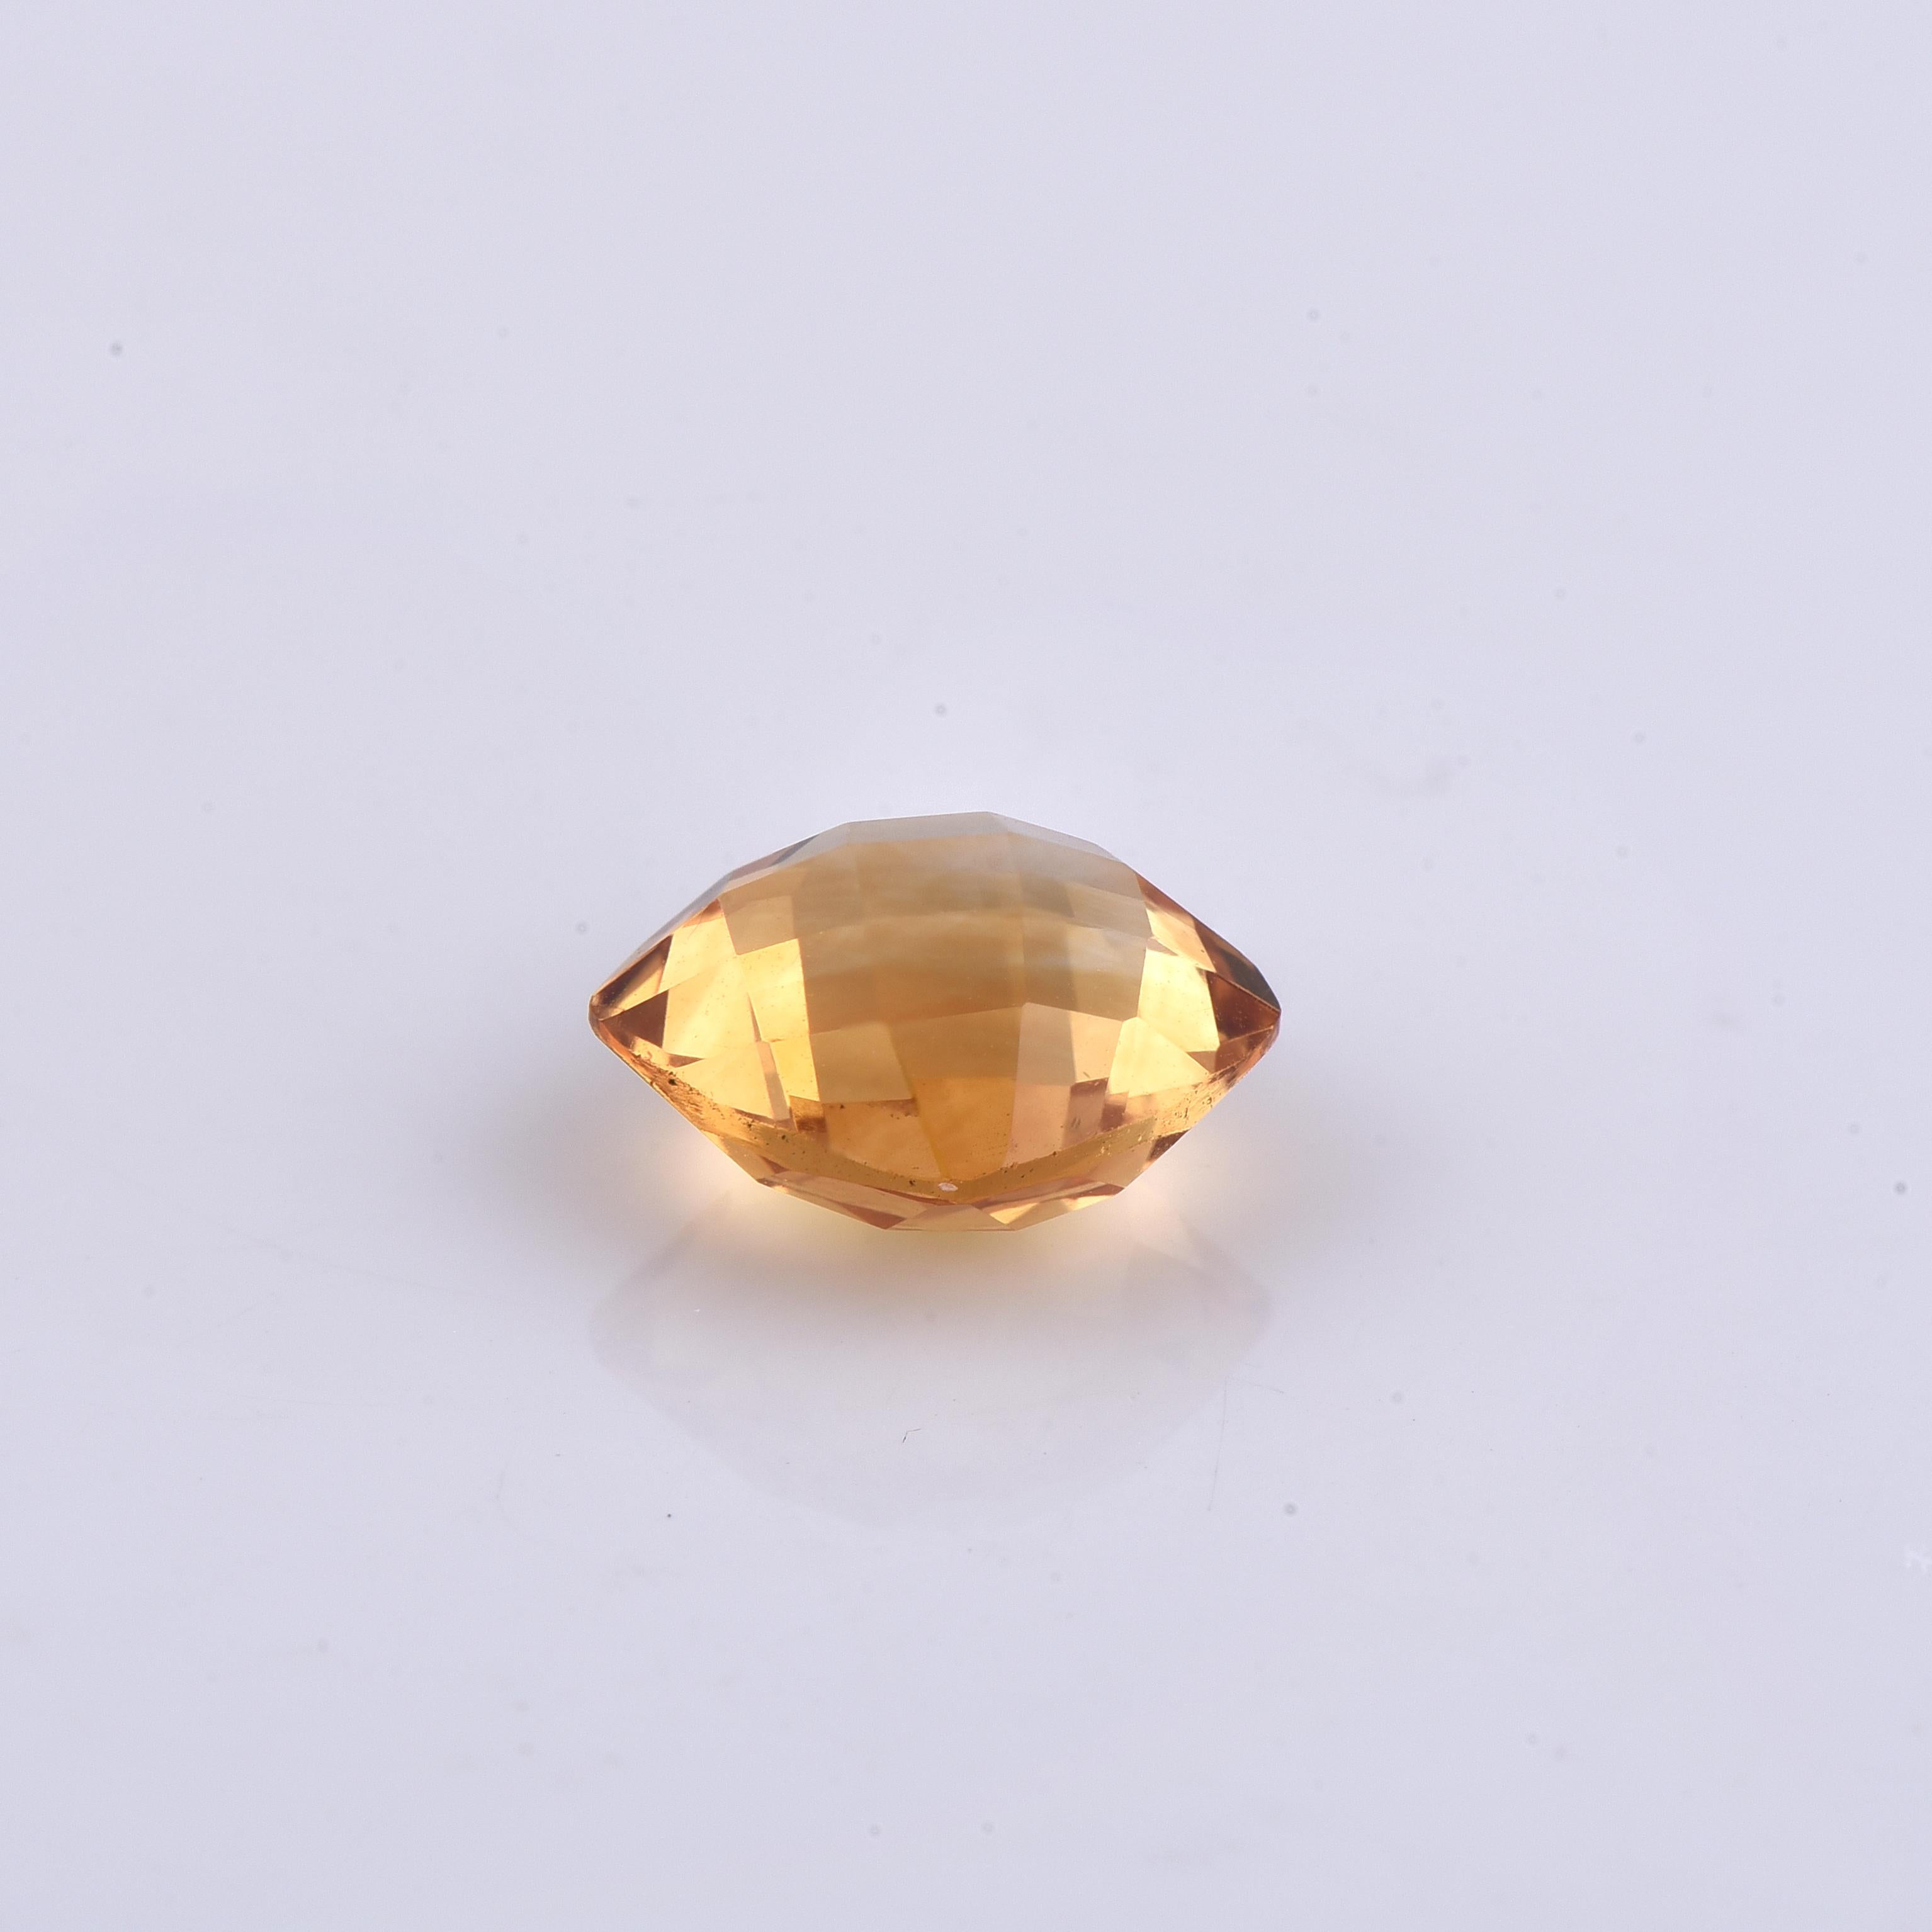 Informationen zum Stein: Natürlicher Citrin 
Form/Schliff: Kissenschliff
Farbe: Gelb
Abmessungen (mm): 10,00 x 10,00 x 5,70
Gewicht: 3,97ct